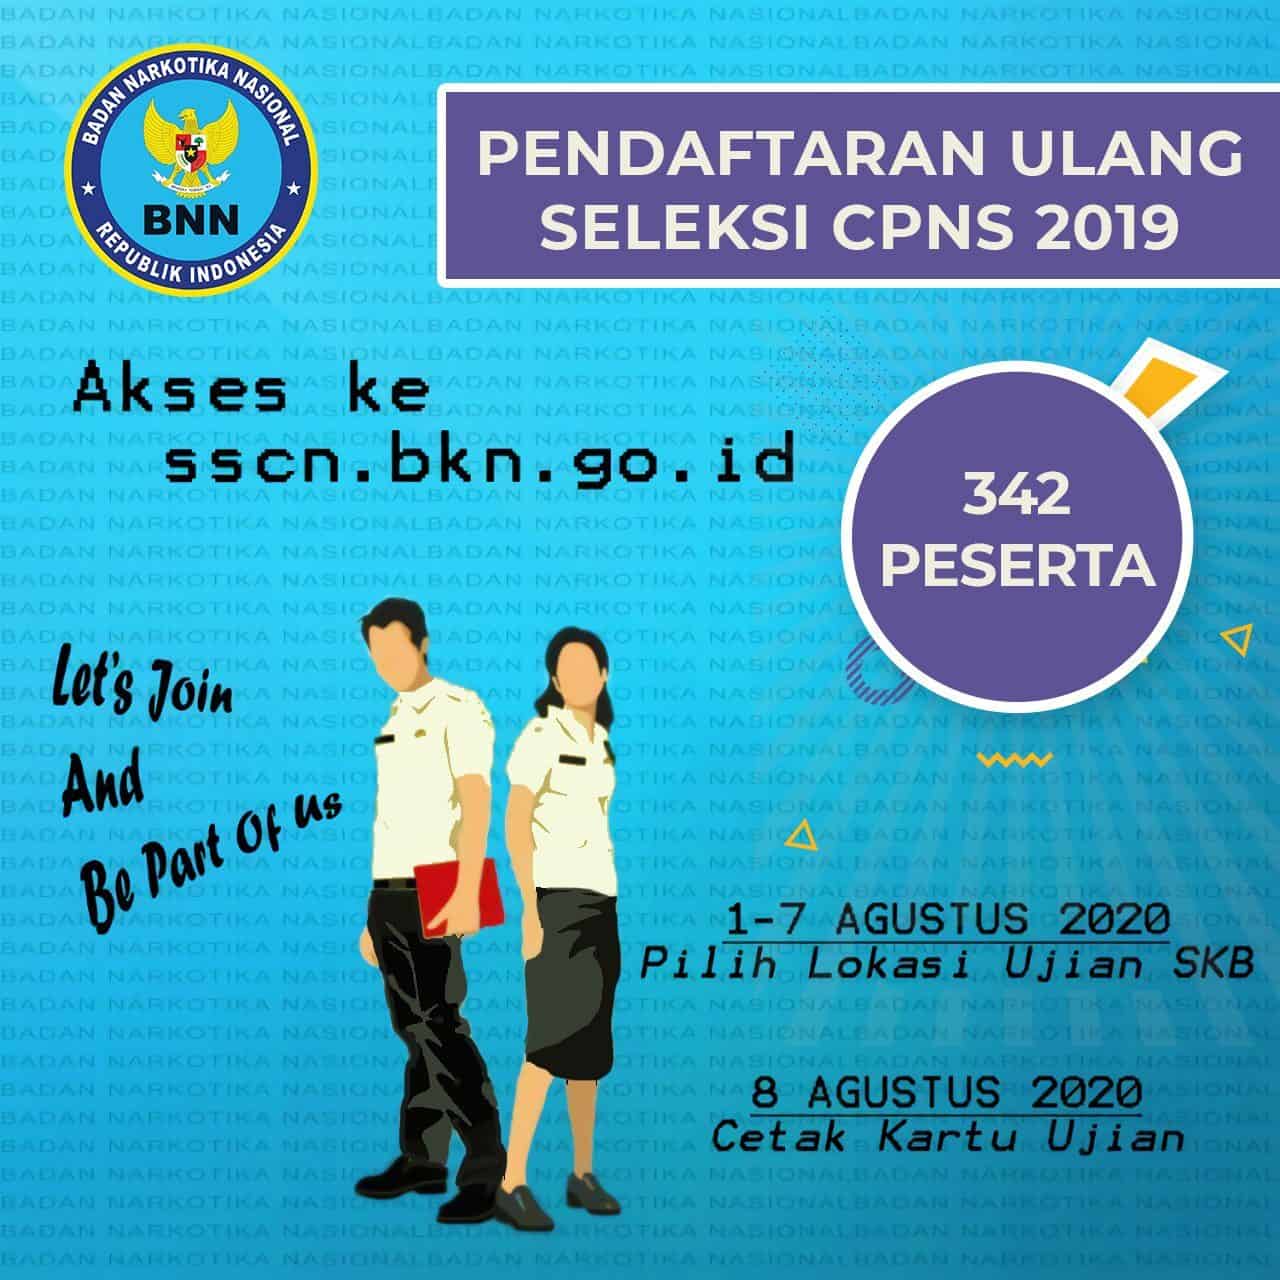 Pendaftaran Ulang Seleksi CPNS BNN RI 2019.